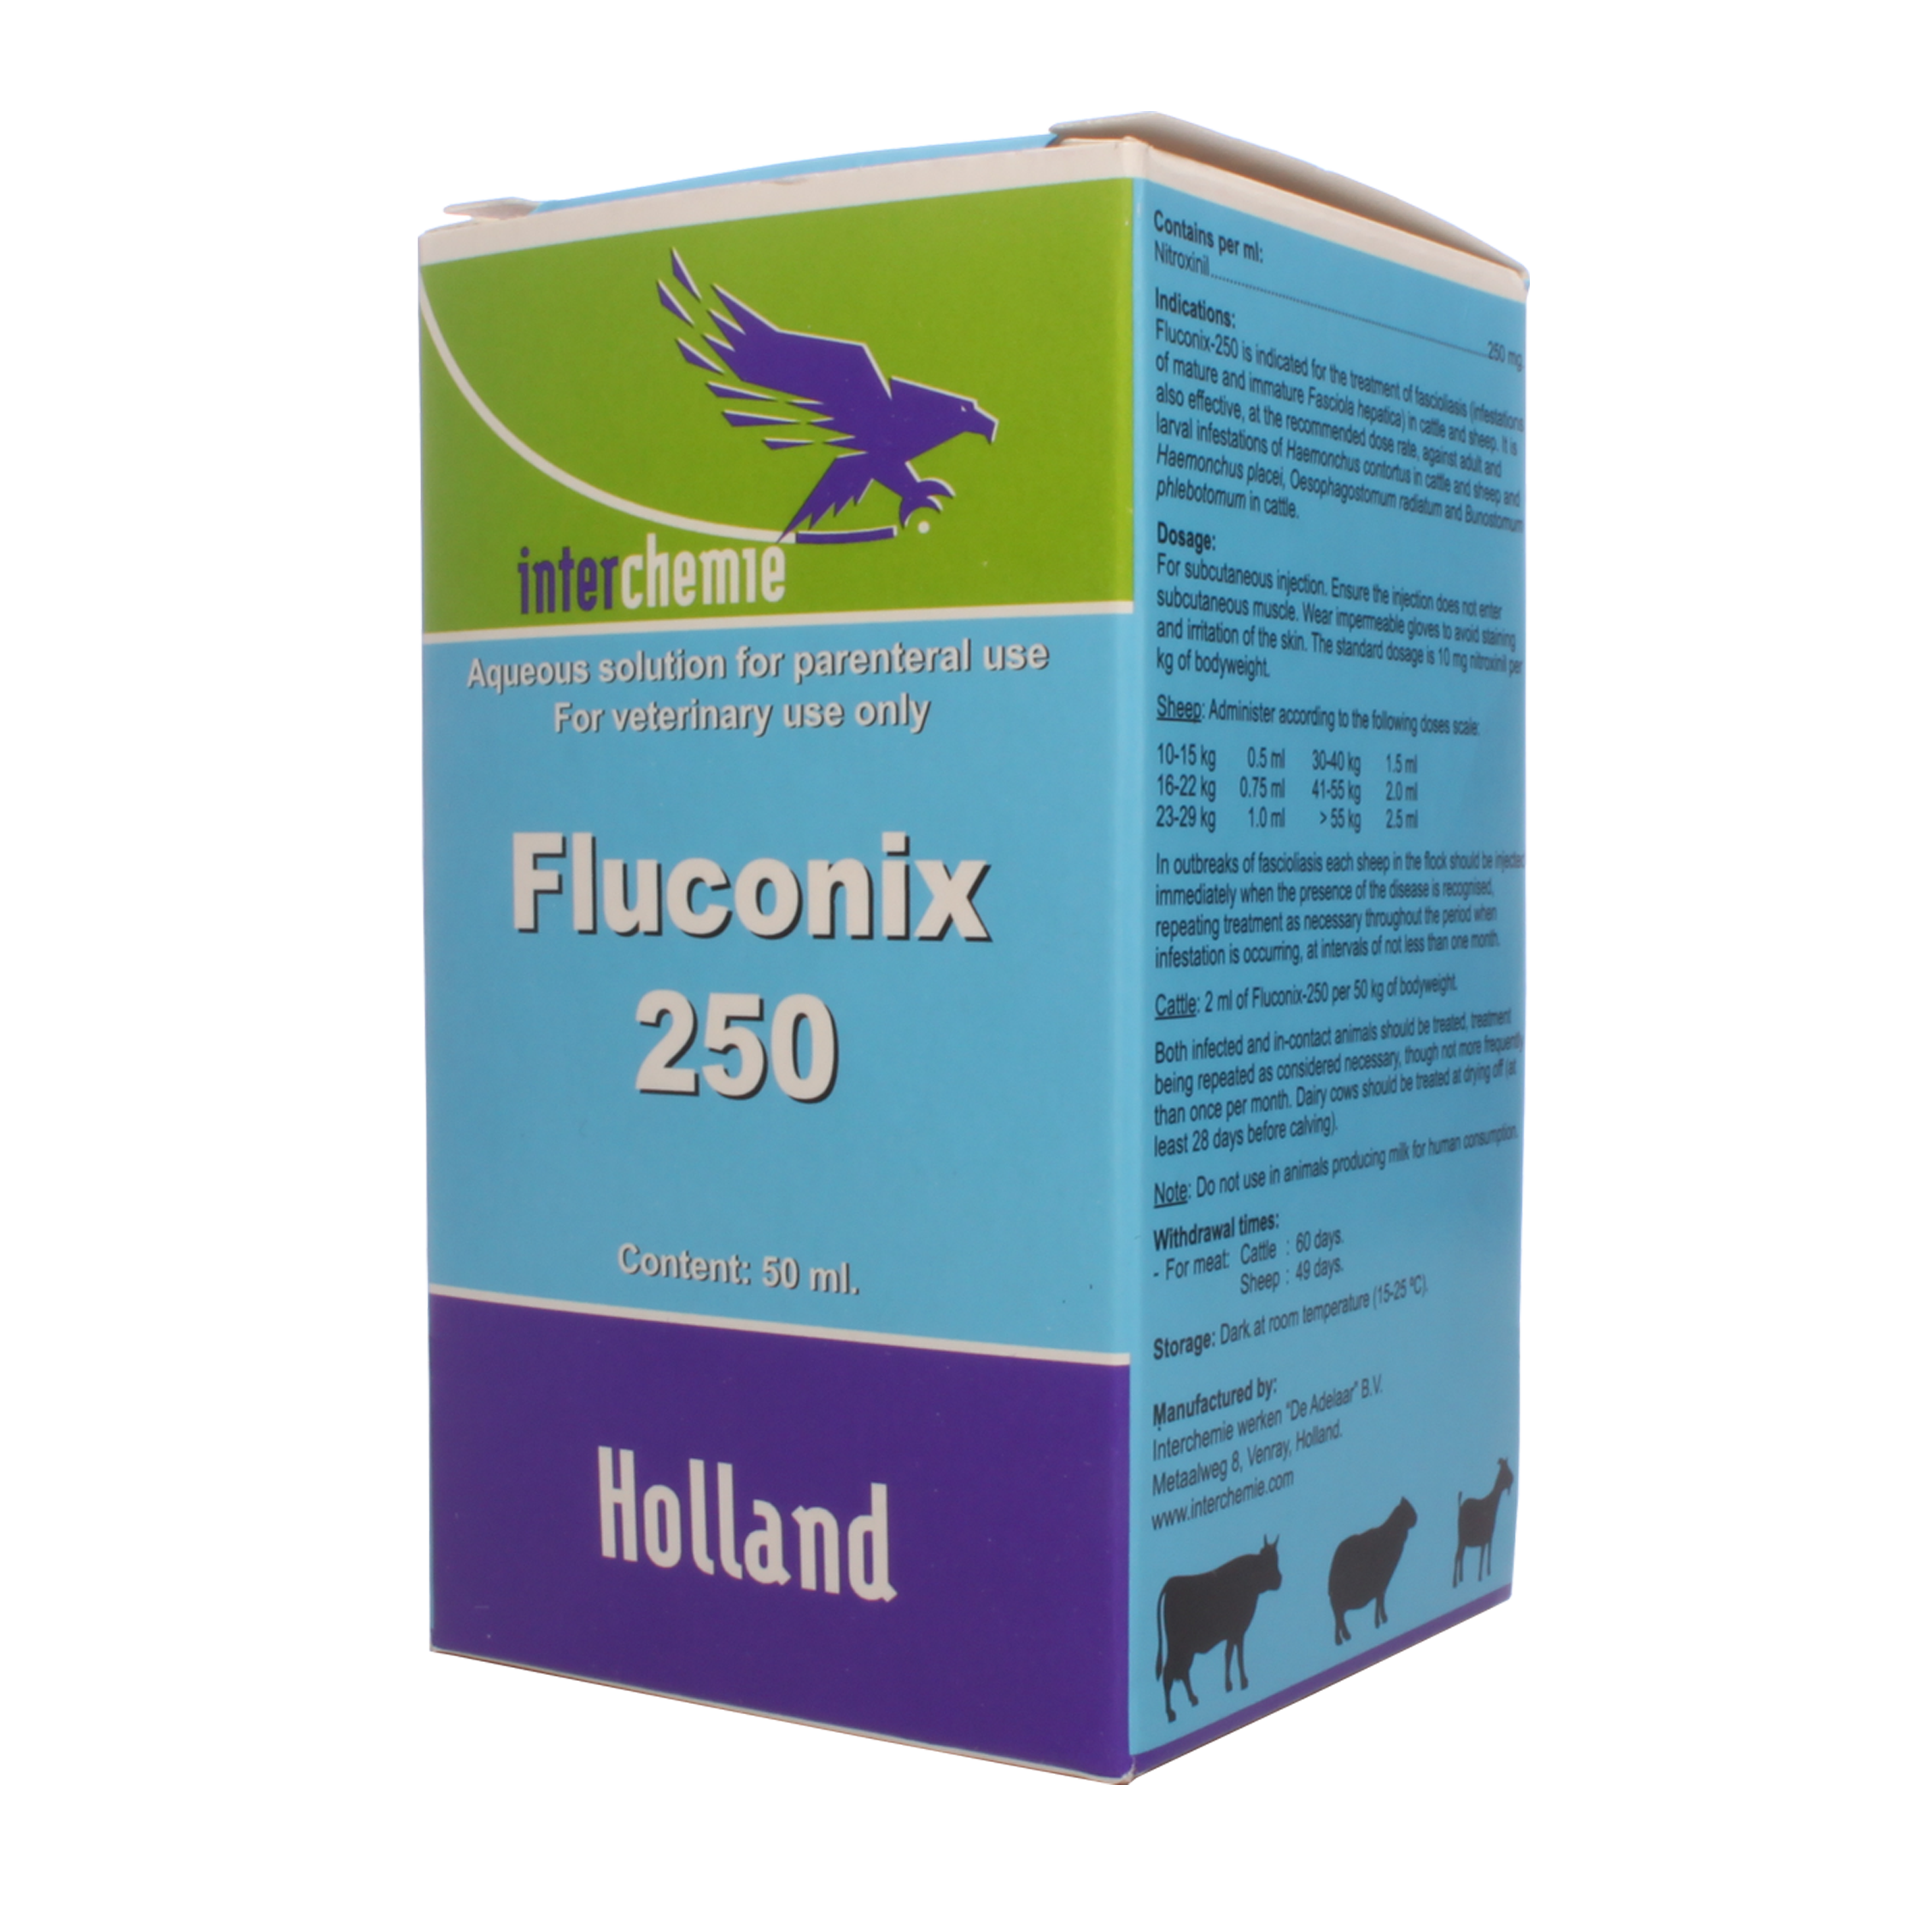 Fluconix 250 dus